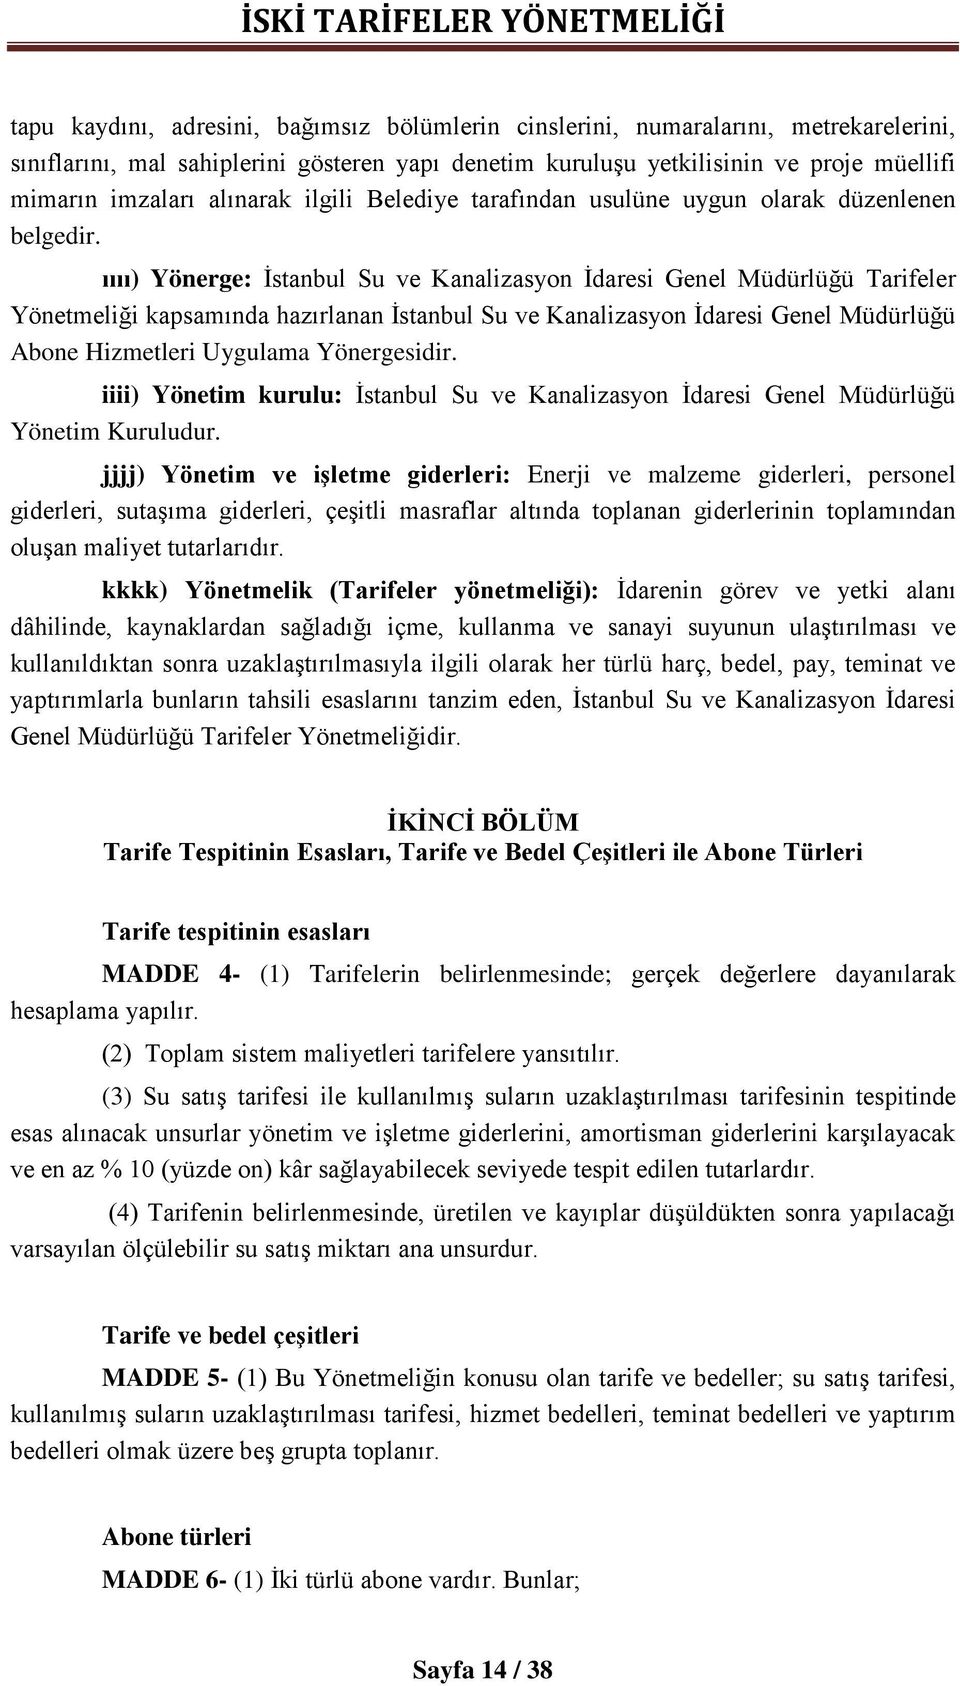 ıııı) Yönerge: İstanbul Su ve Kanalizasyon İdaresi Genel Müdürlüğü Tarifeler Yönetmeliği kapsamında hazırlanan İstanbul Su ve Kanalizasyon İdaresi Genel Müdürlüğü Abone Hizmetleri Uygulama